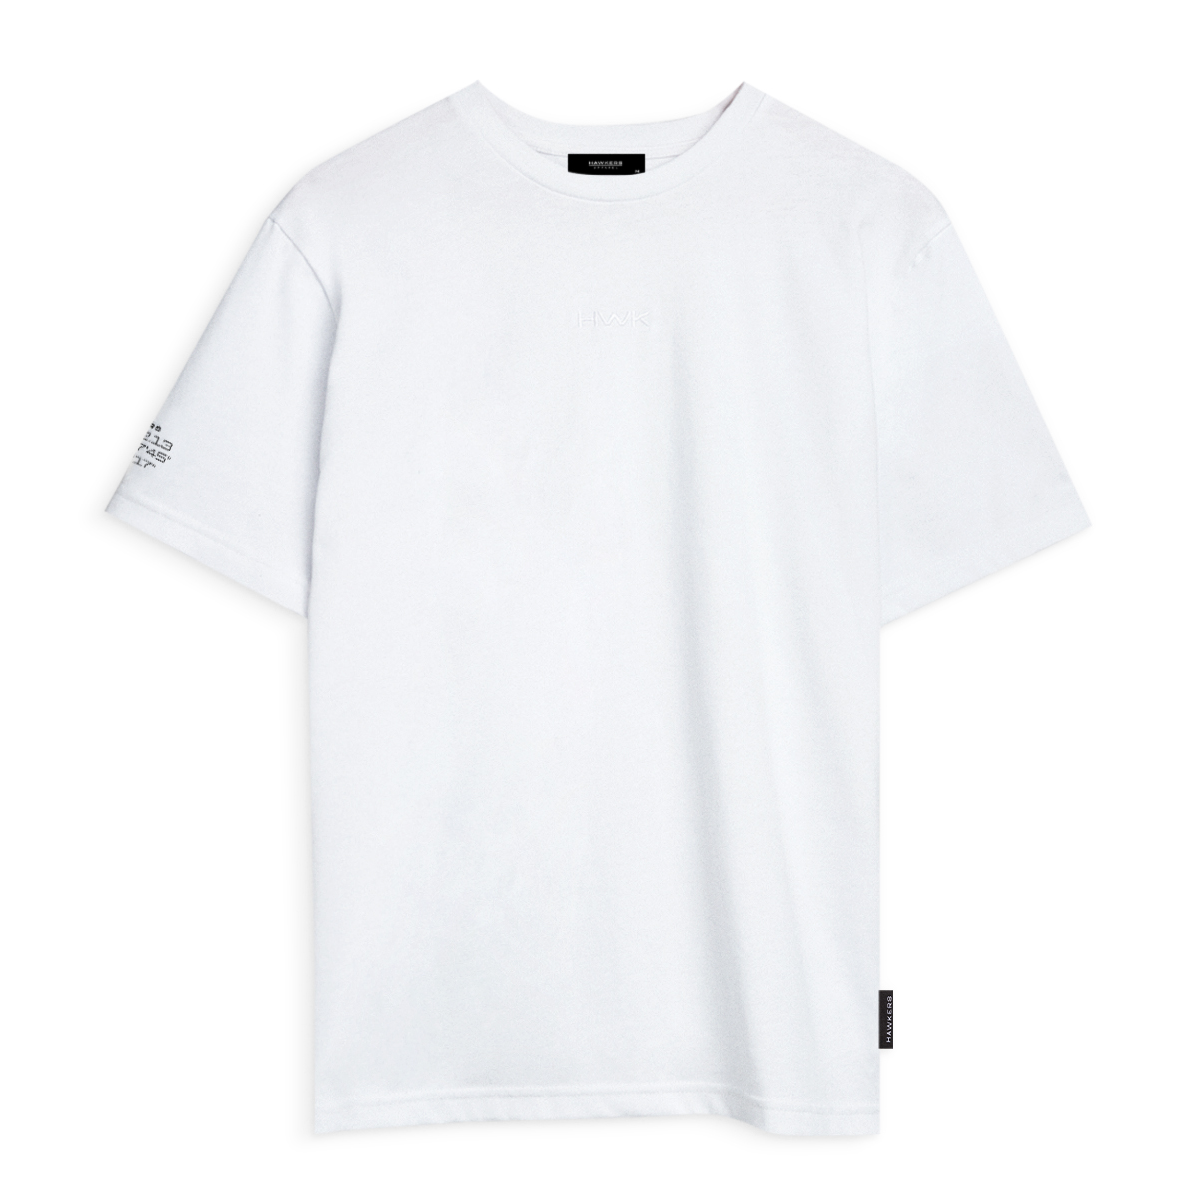 Lax T-shirt White (s)